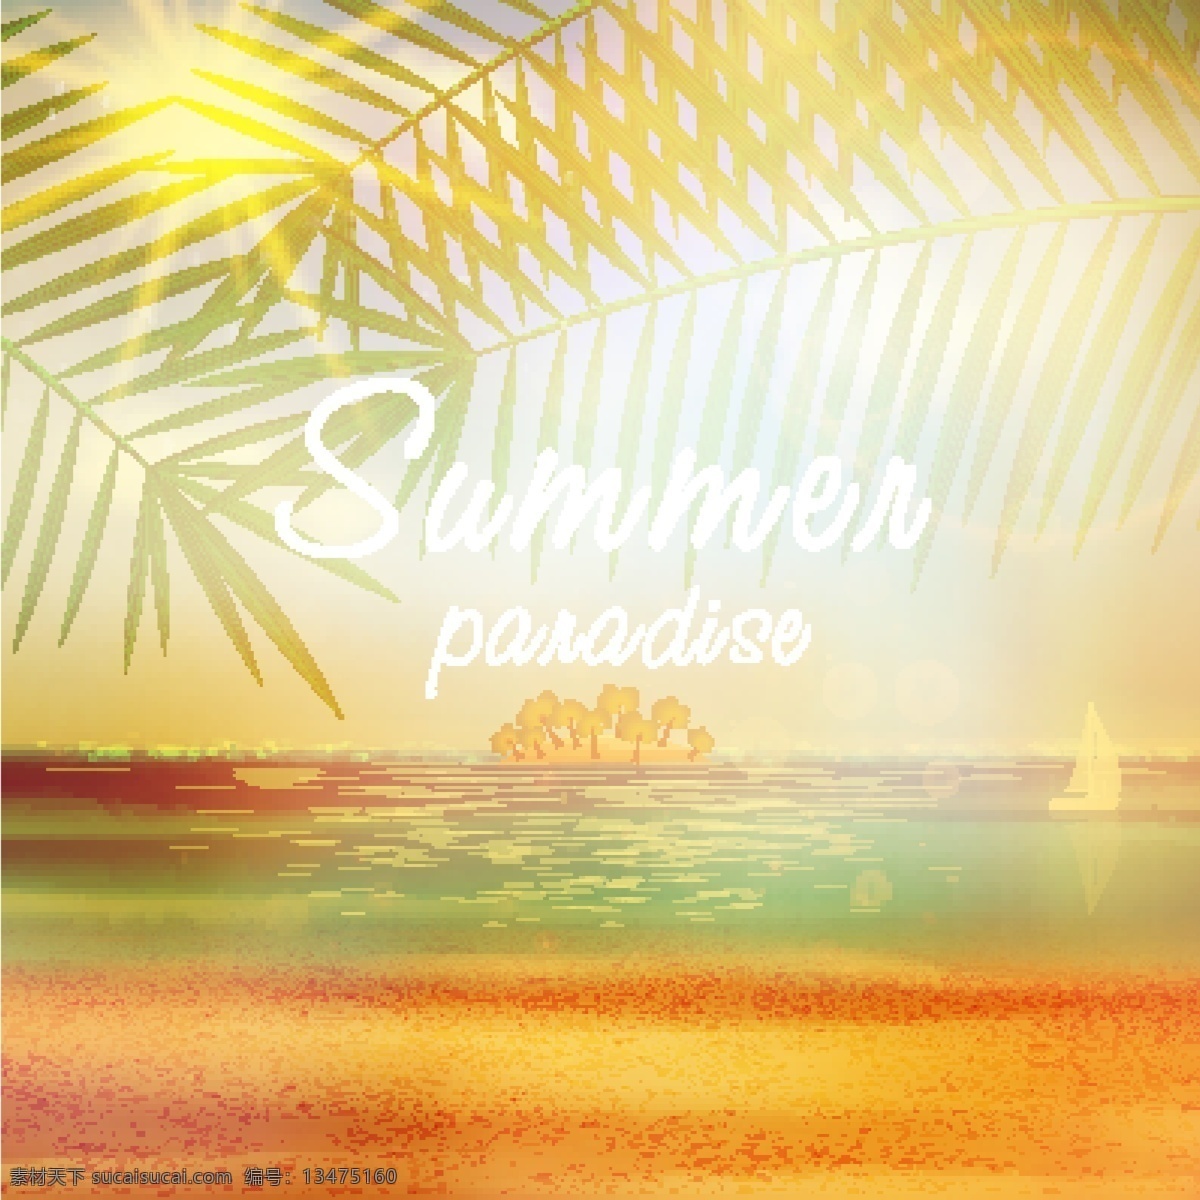 阳光 照射 下 沙滩 模板下载 夏天主题 椰树 大海 行业标志 标志图标 矢量素材 黄色